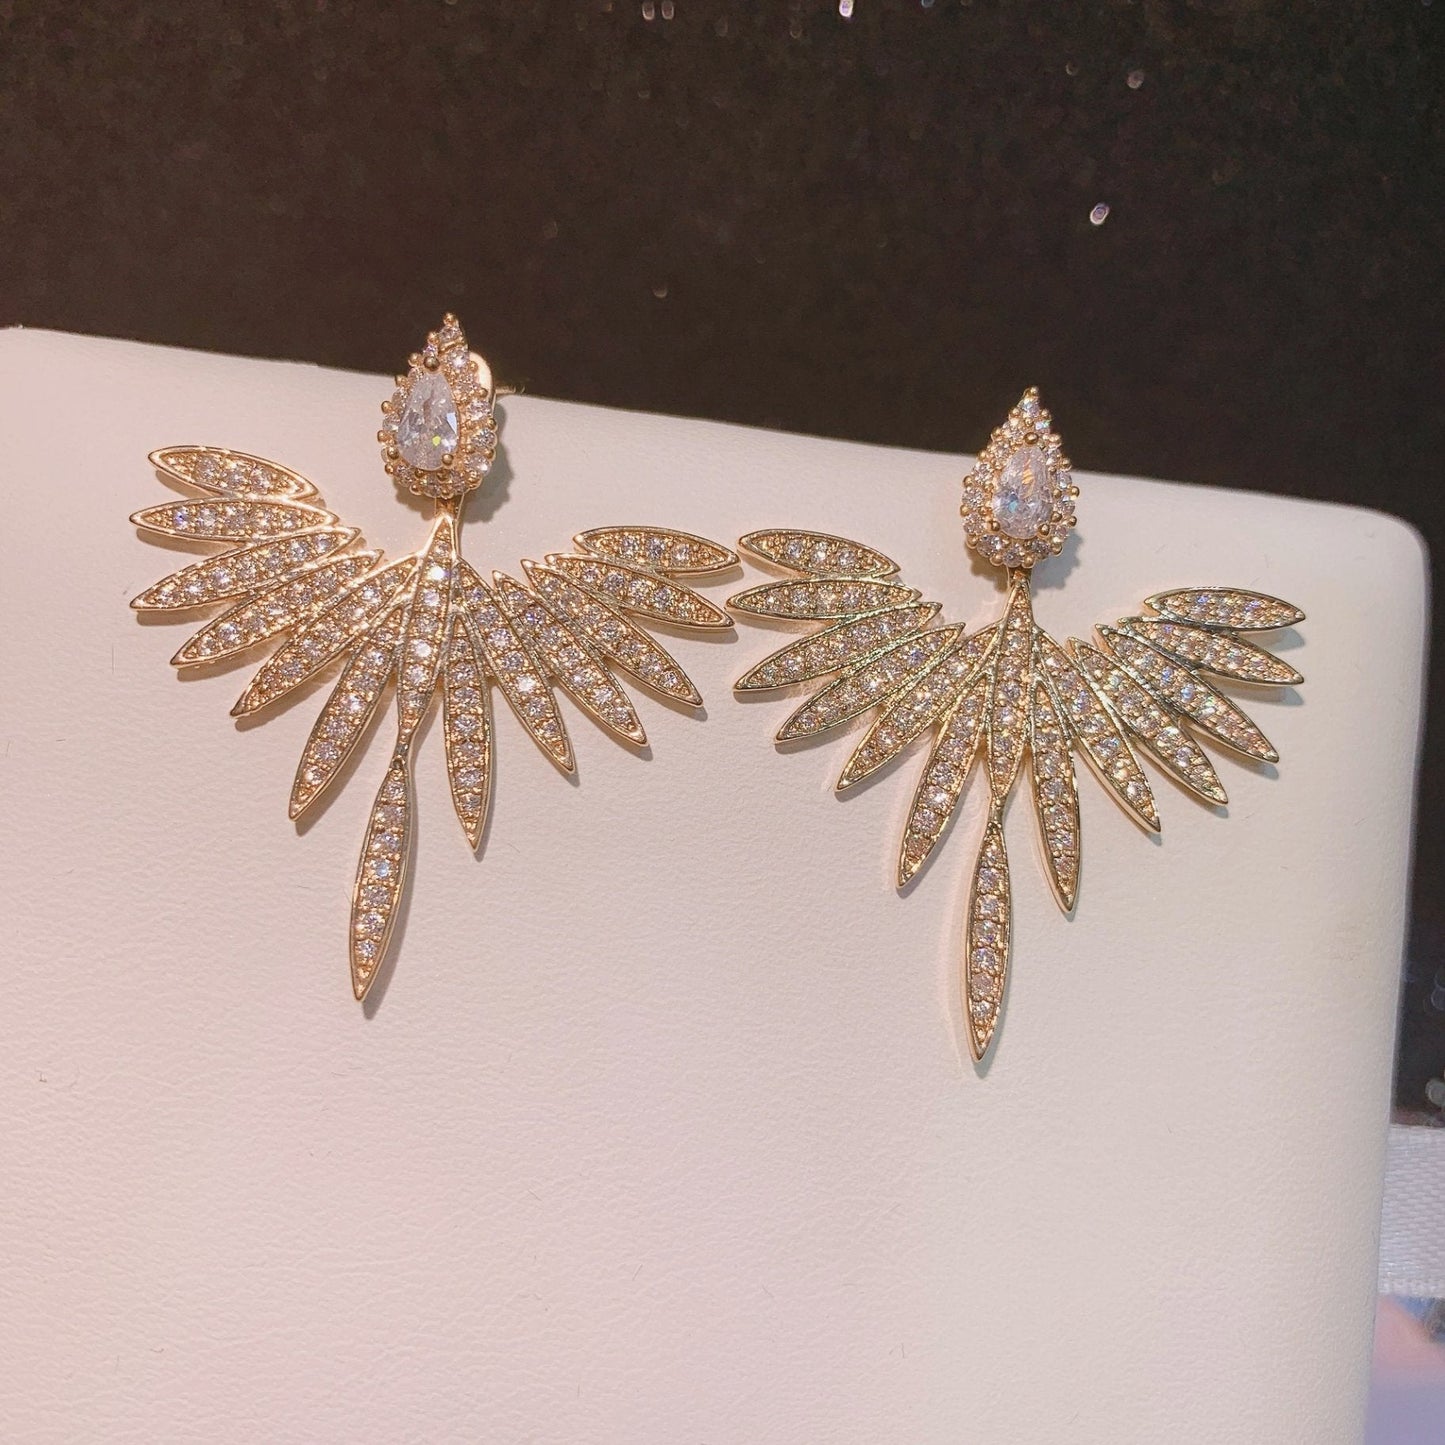 Crystal Marquise Drop Earrings